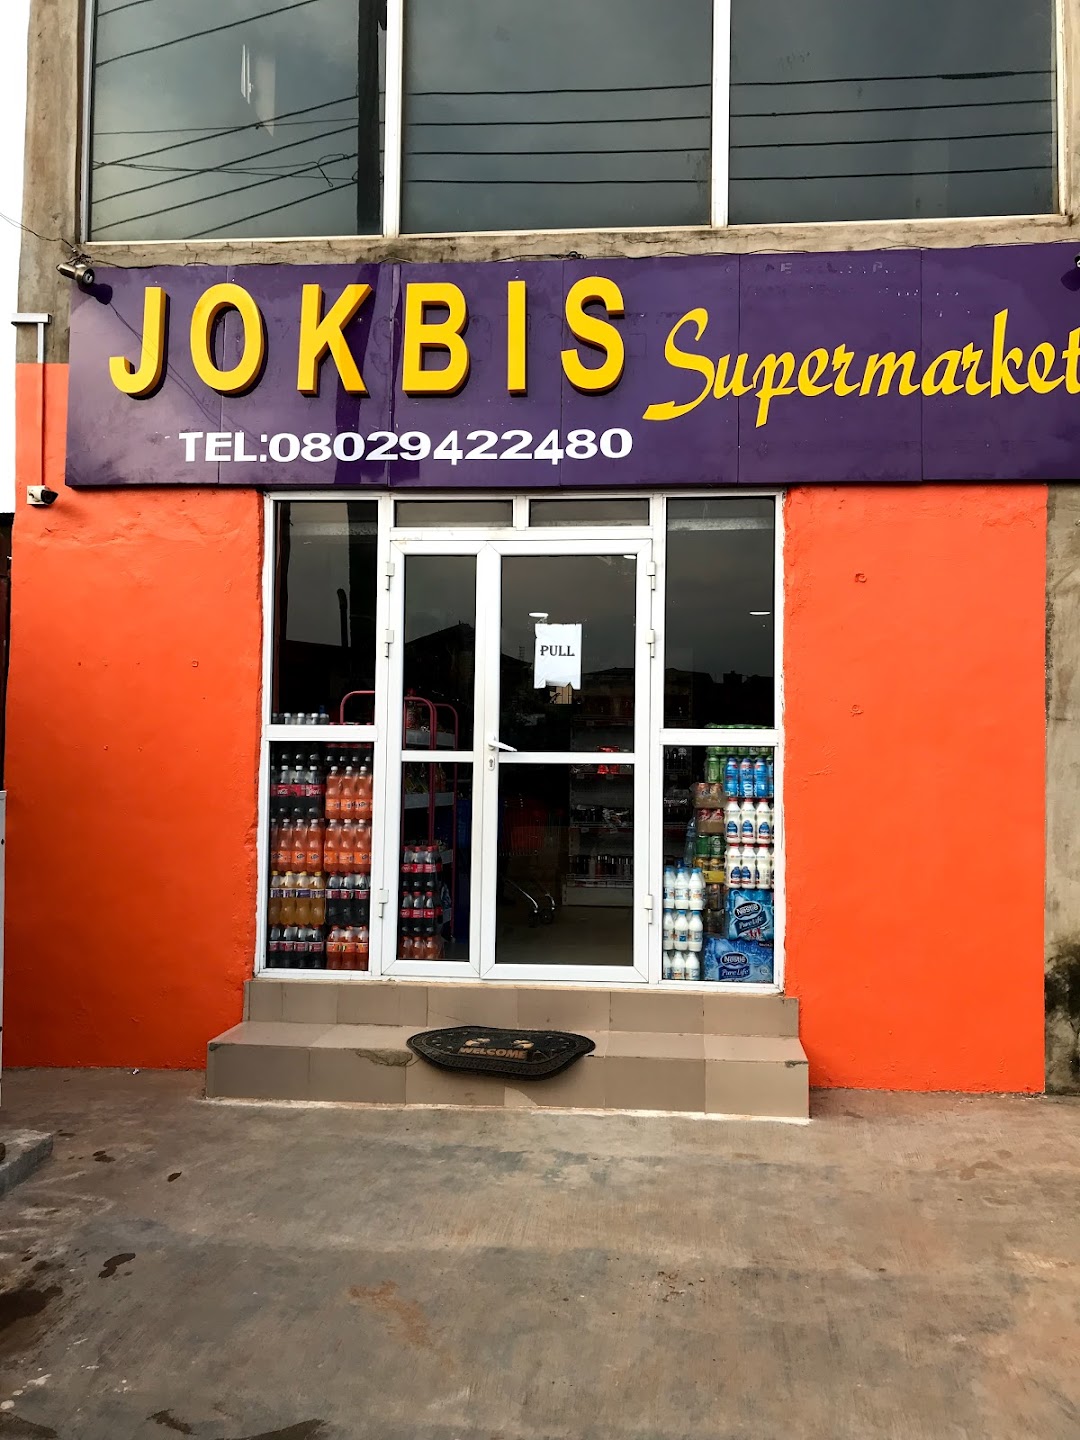 JOKBIS SUPERMARKET